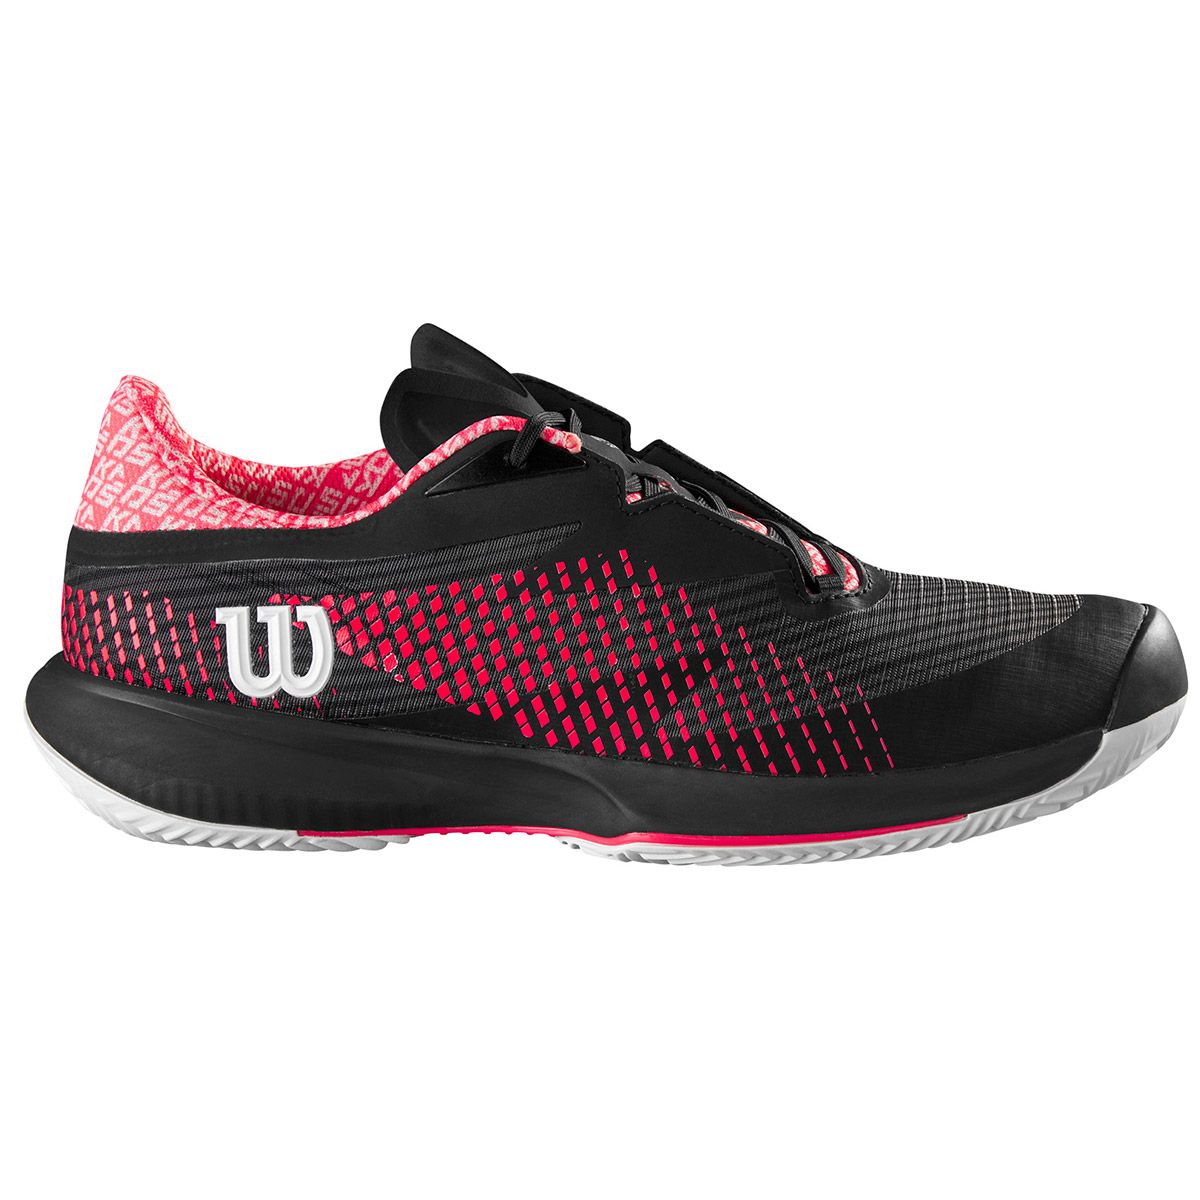 Wilson Kaos Swift 1.5 Women's Clay Tennis Shoes WRS331100